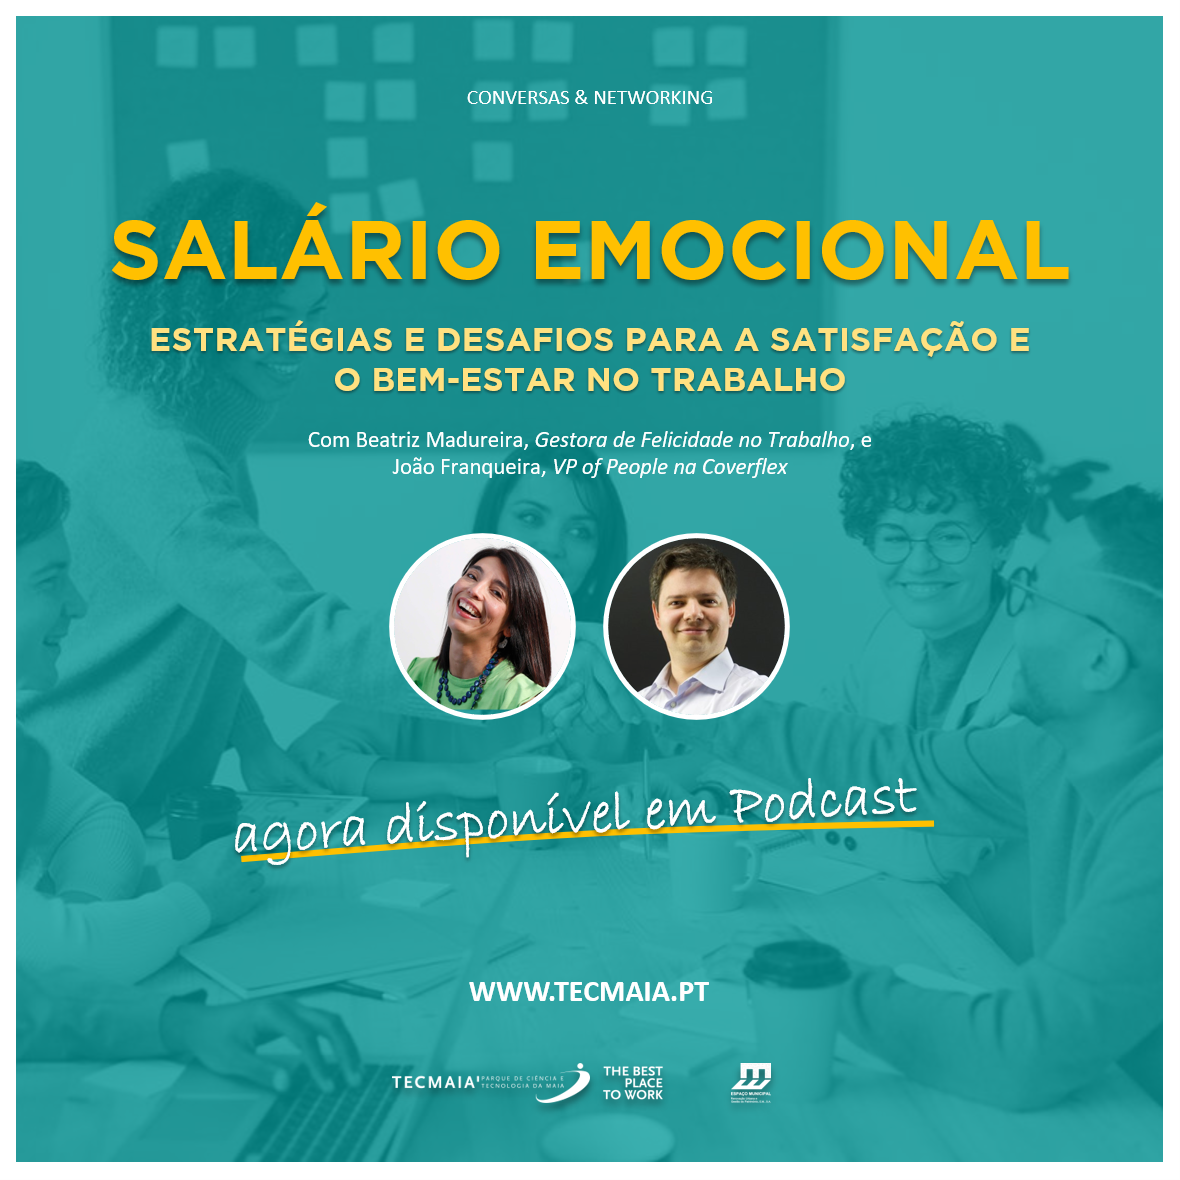 Webtalk "Salário Emocional - Estratégias e Desafios para a Satisfação e o Bem-Estar no Trabalho